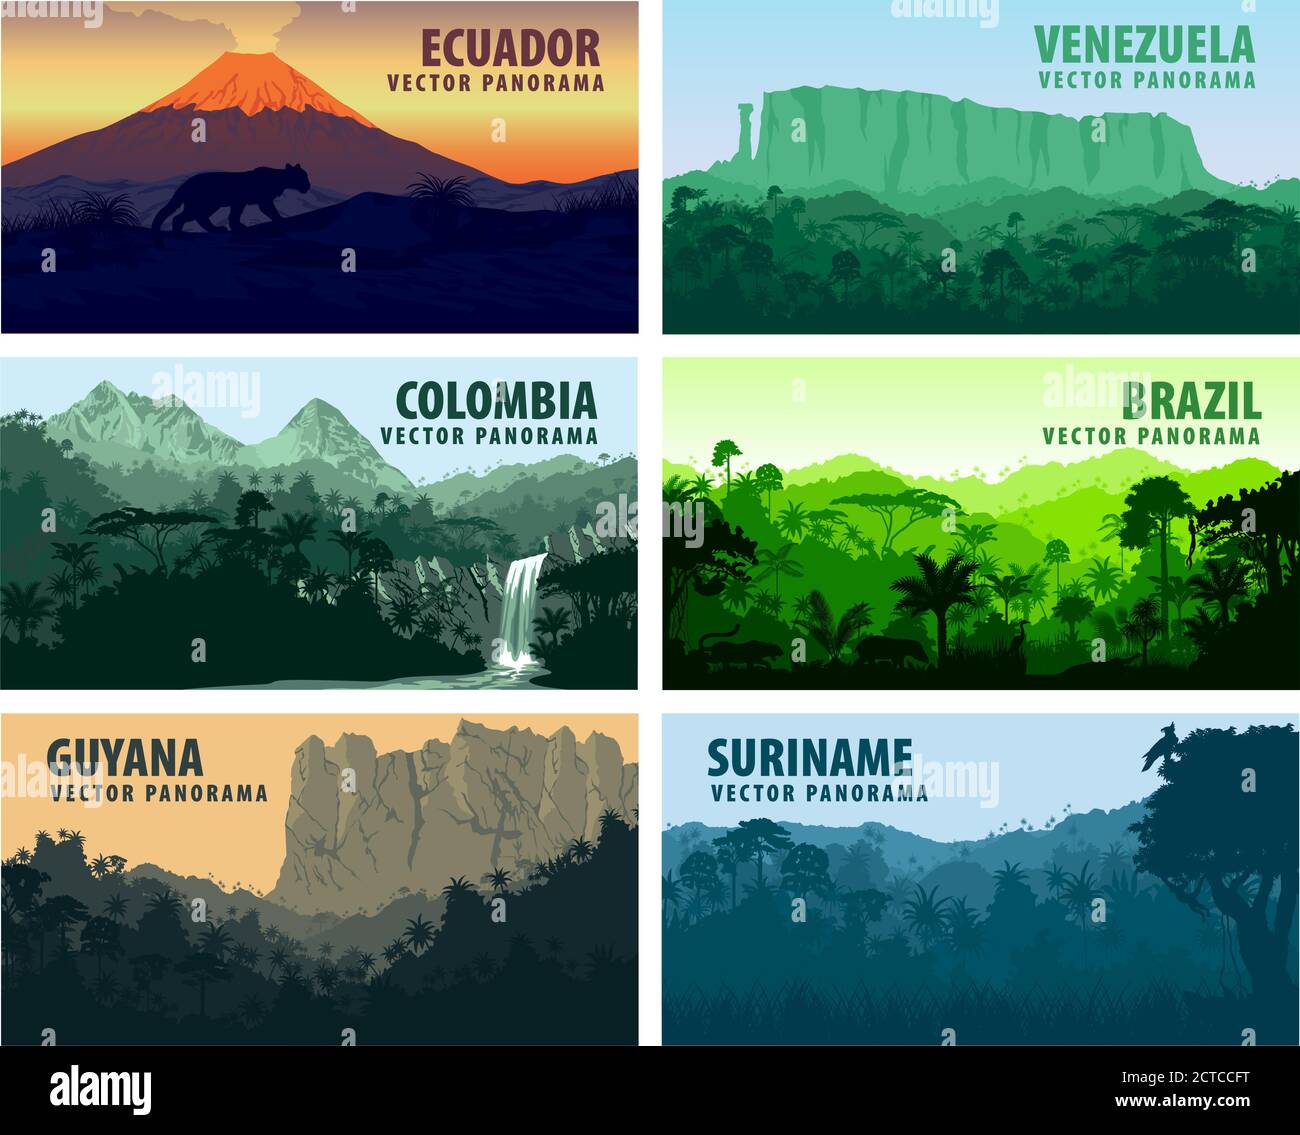 vector set of panorams countries South America - Venezuela, Brazil, Suriname, Ecuador, Colombia, Guyana Stock Vector